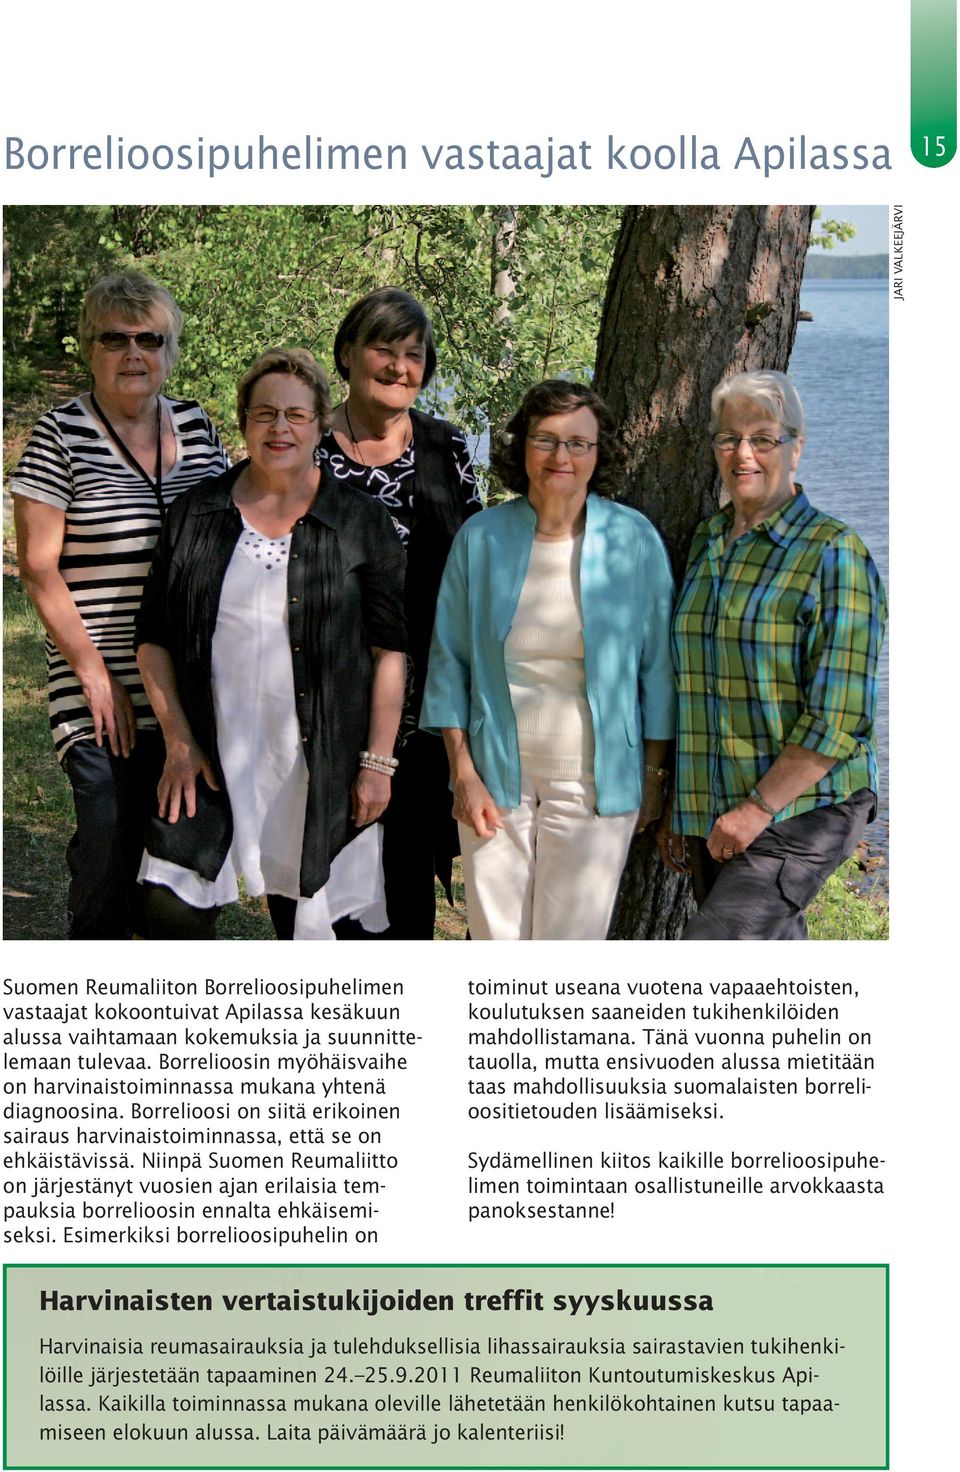 Niinpä Suomen Reumaliitto on järjestänyt vuosien ajan erilaisia tempauksia borrelioosin ennalta ehkäisemiseksi.